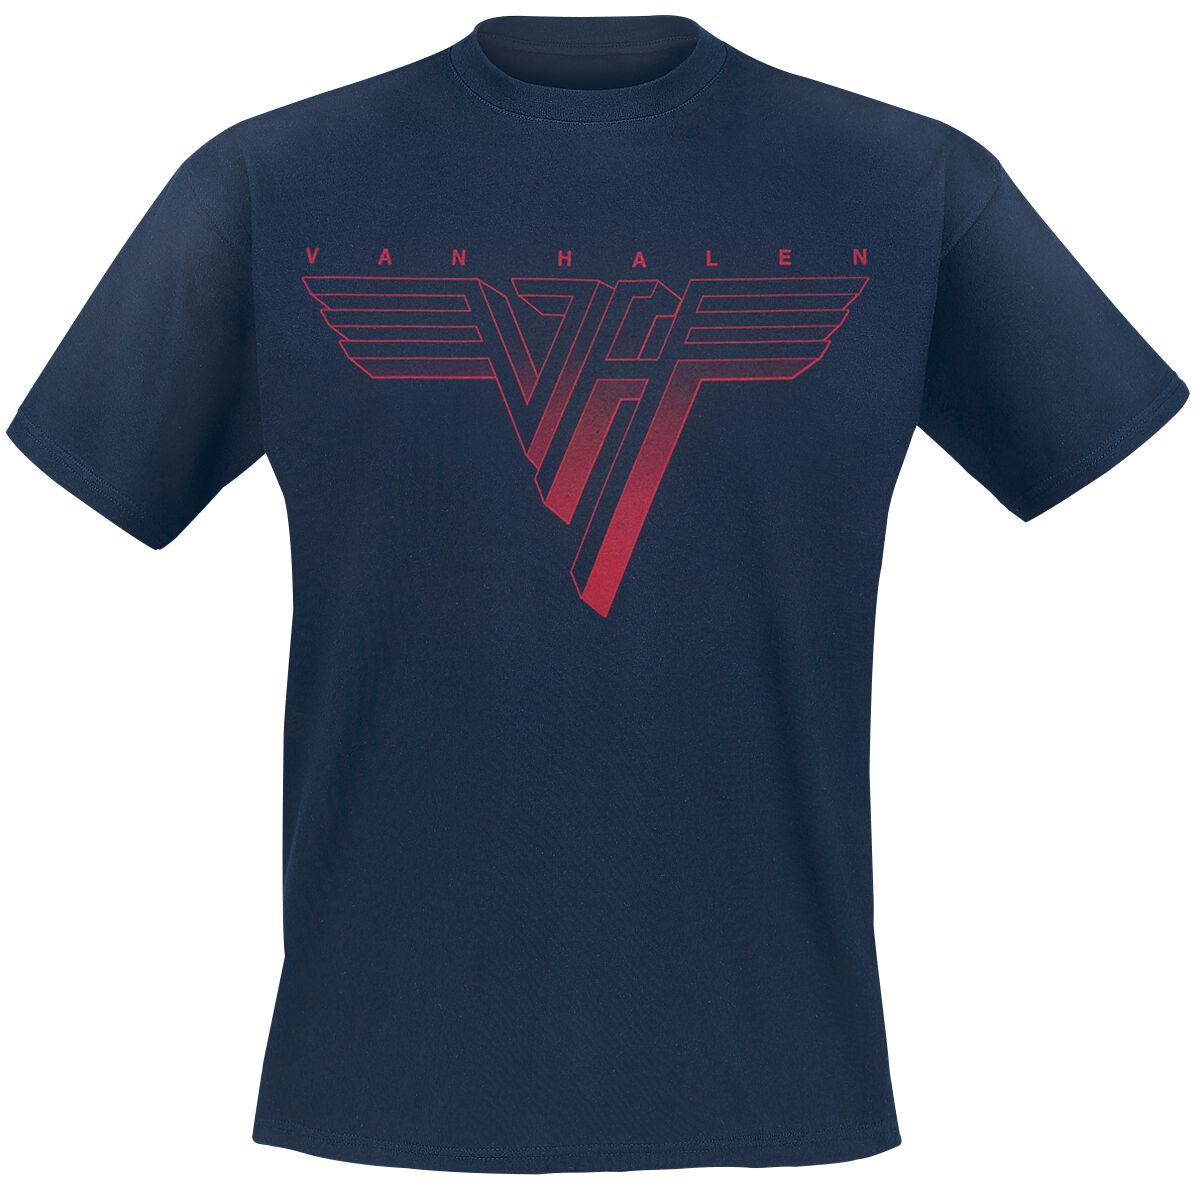 Van Halen T-Shirt - Classic Red Logo - S bis 3XL - für Männer - Größe S - navy  - Lizenziertes Merchandise!